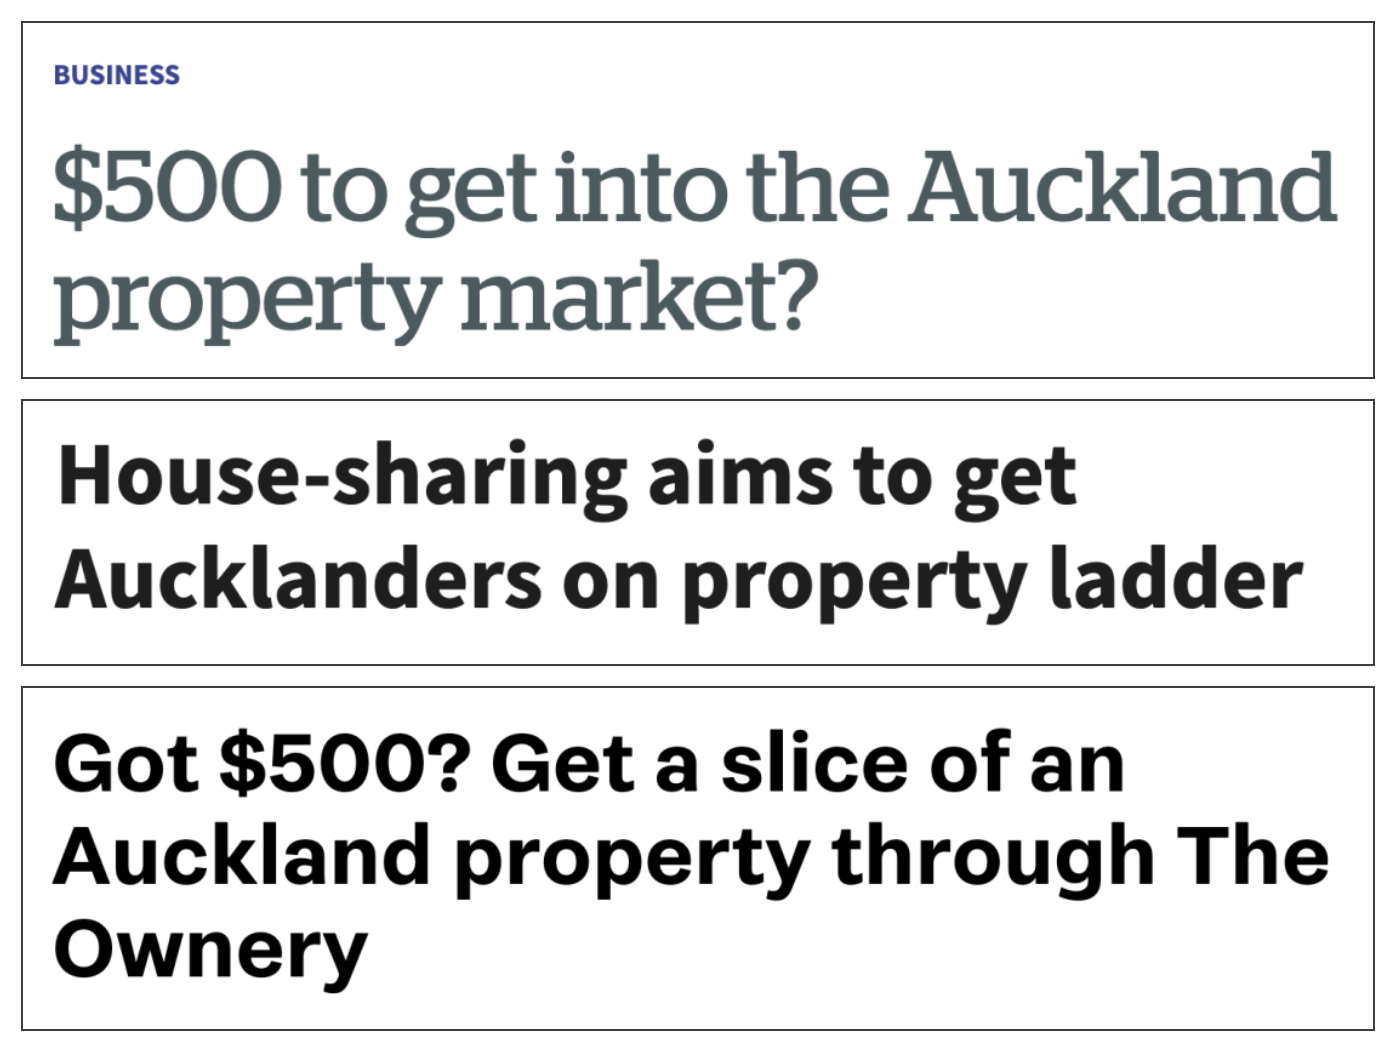 央行今天将公布这件大事，影响所有购房者！为了买房，新西兰人都做过哪些疯狂事？第一个就看呆了……